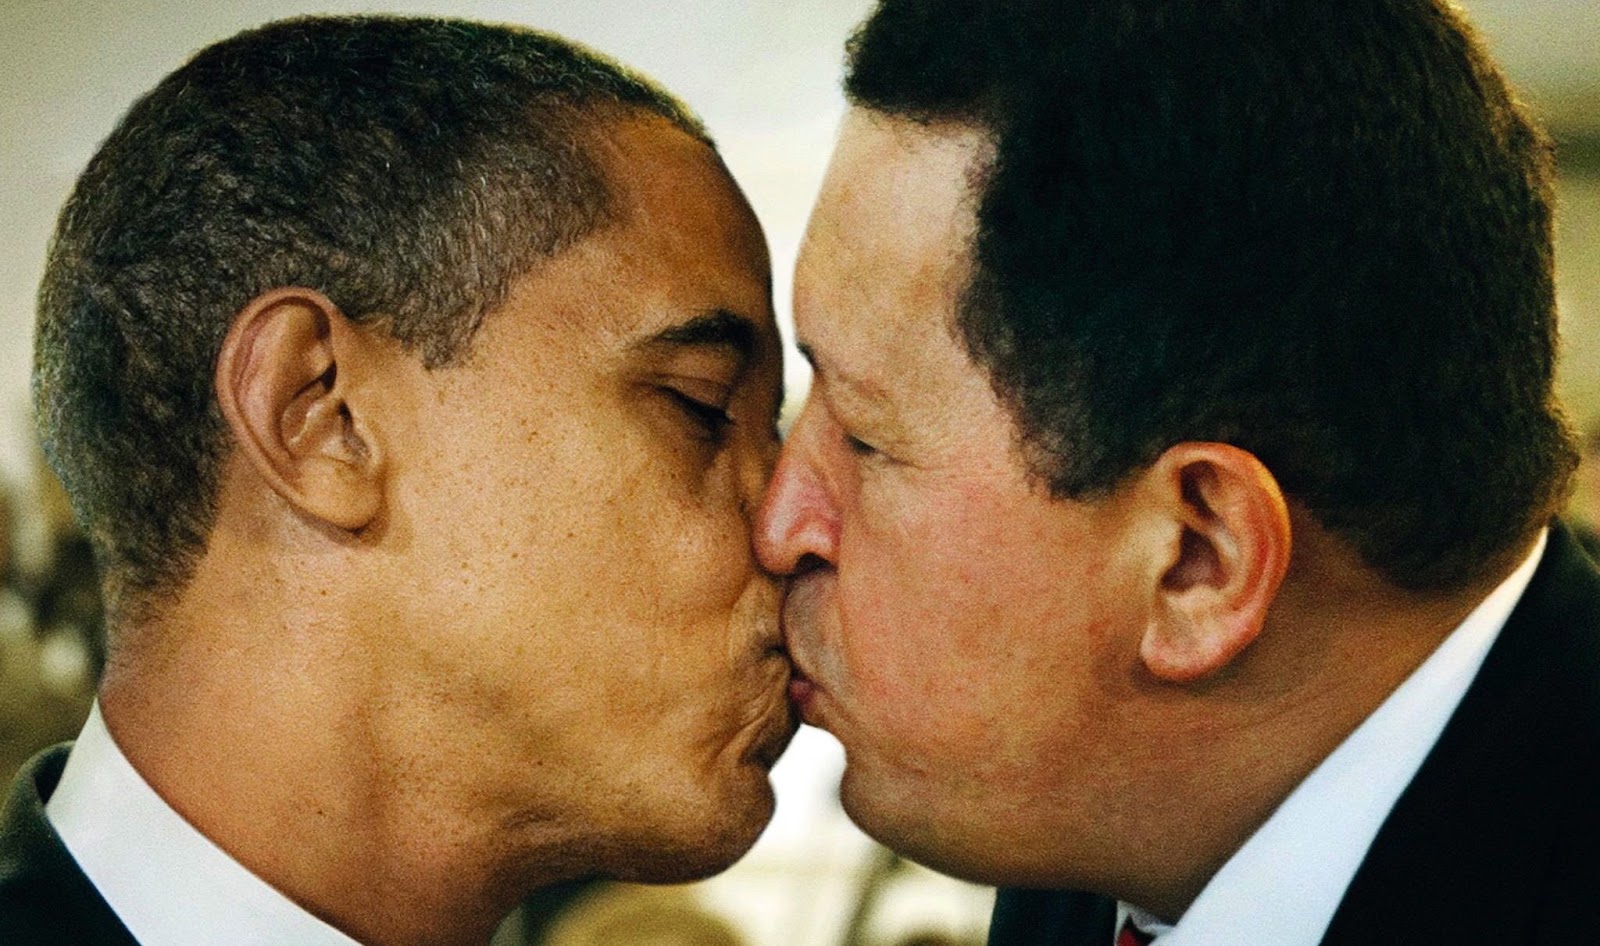 chavez+obama+kiss.jpg